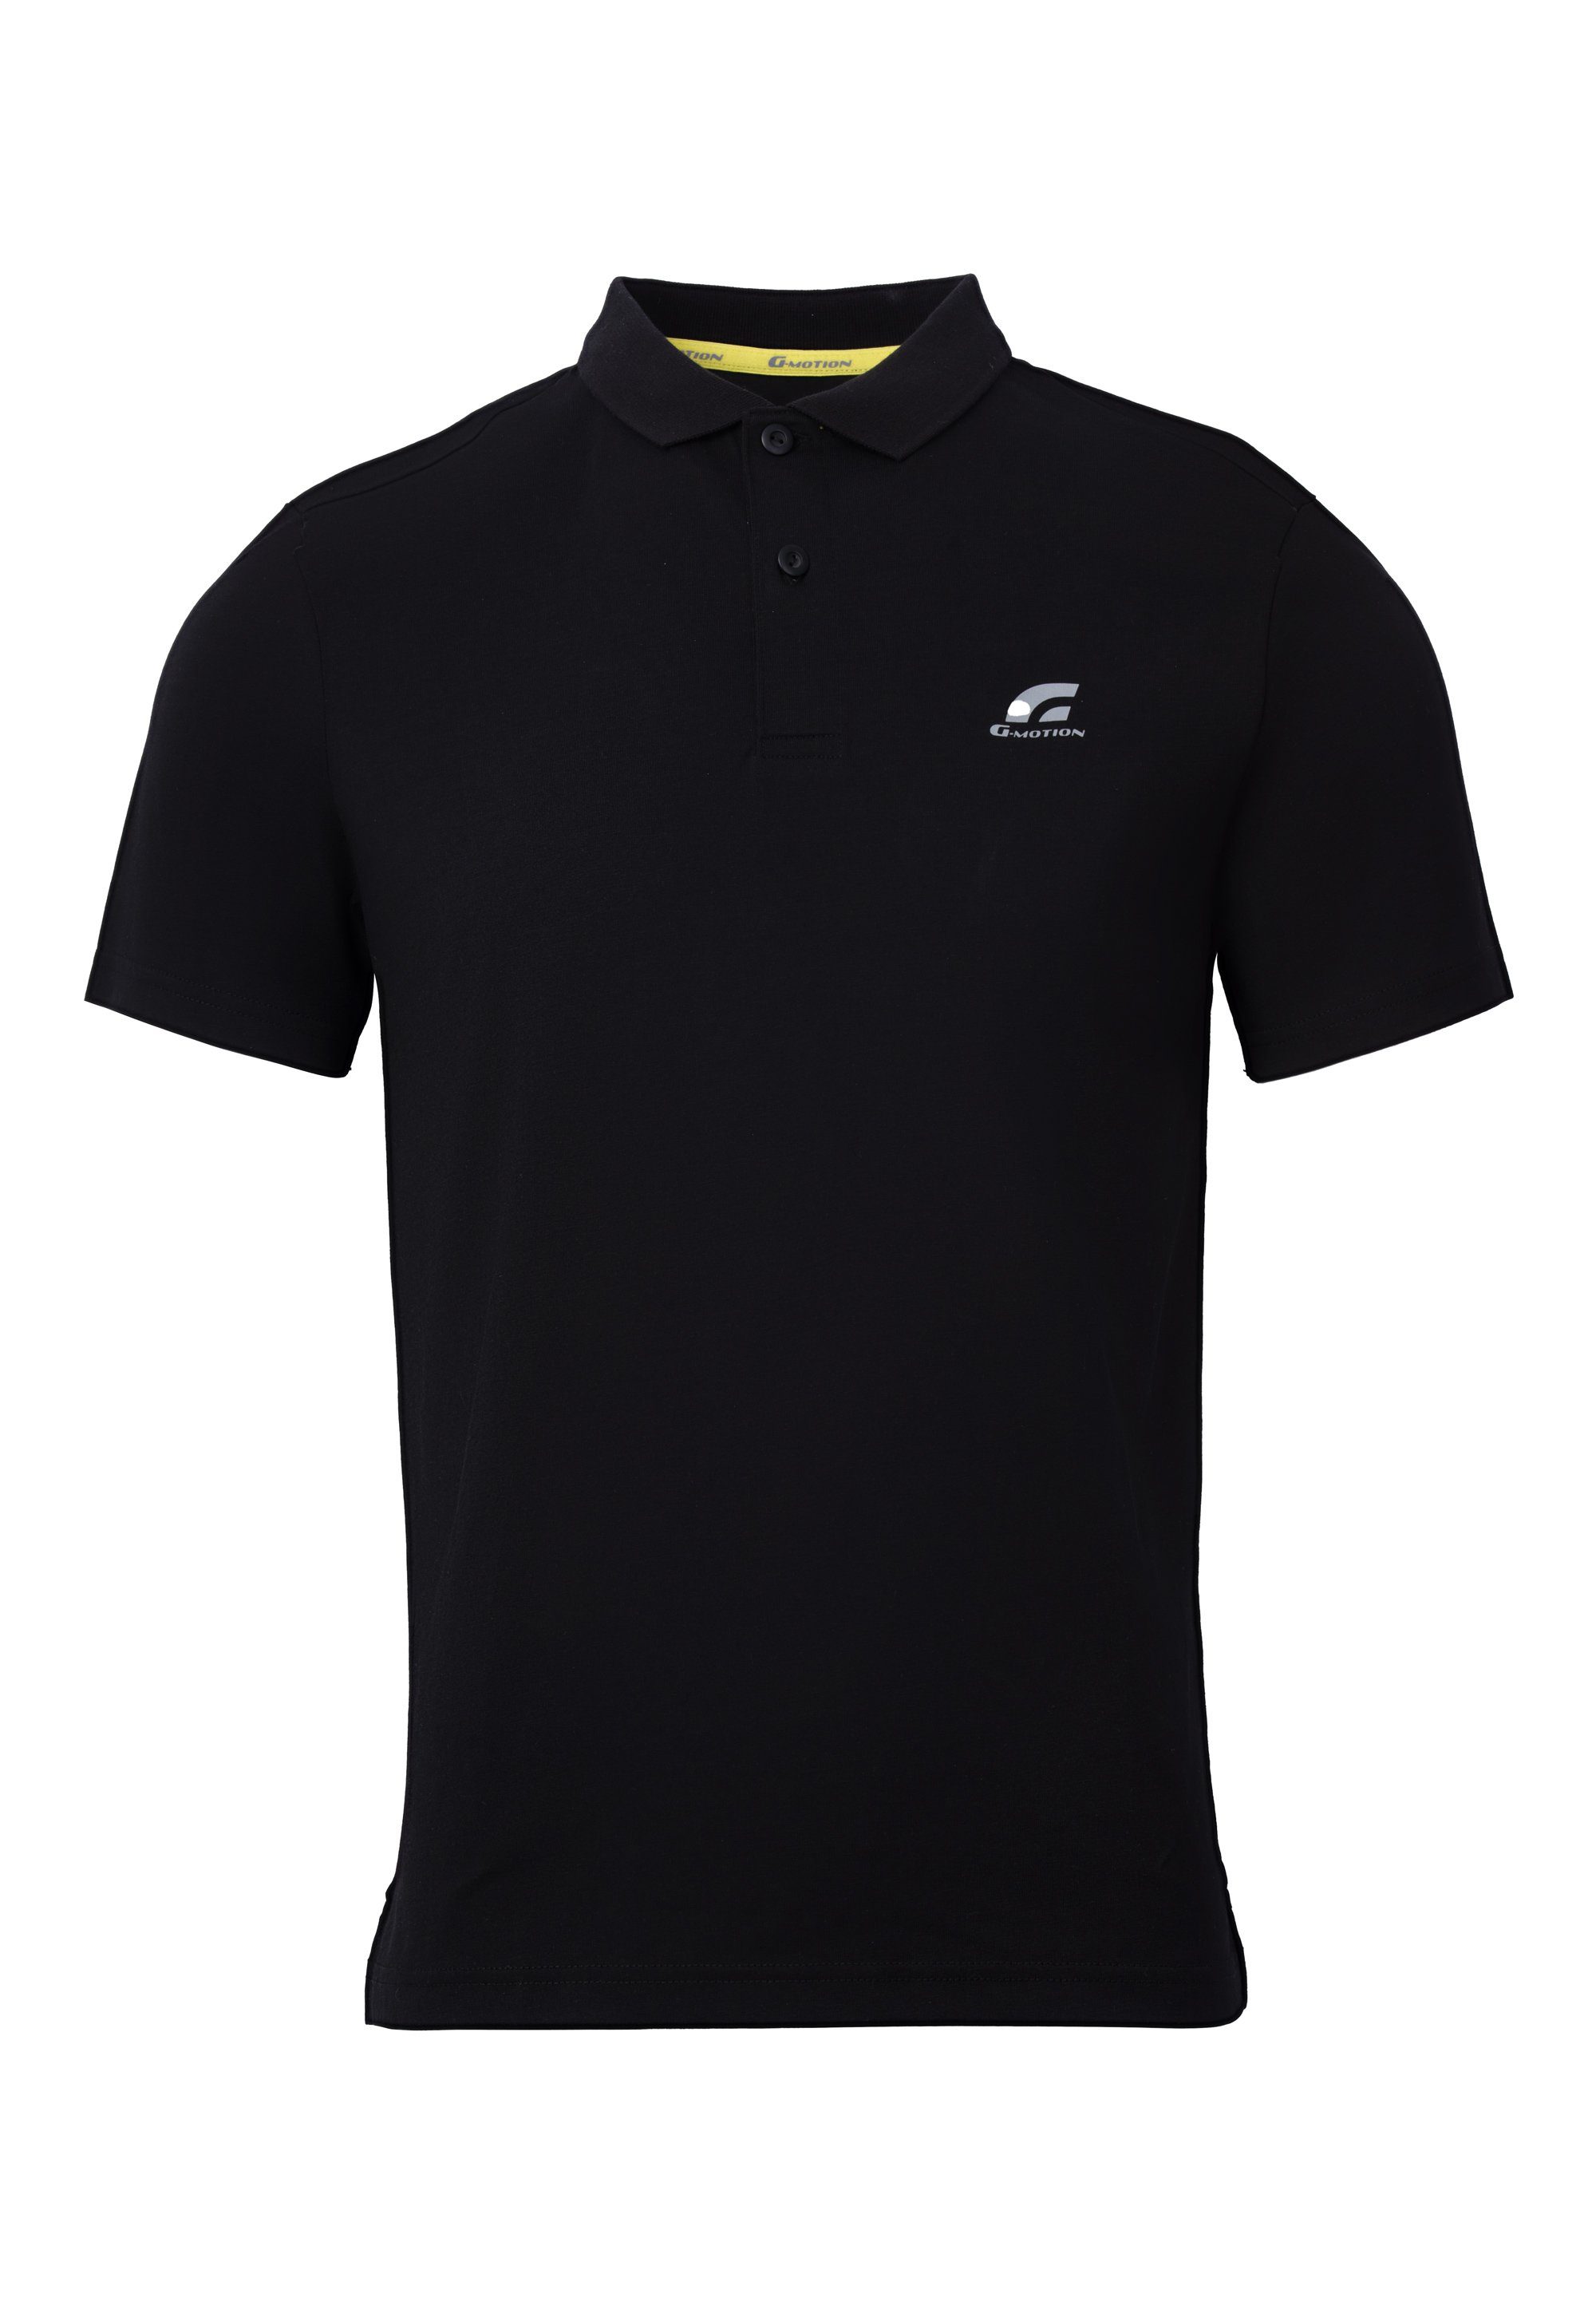 GIORDANO praktischer Quick-Dry-Funktion Poloshirt mit schwarz